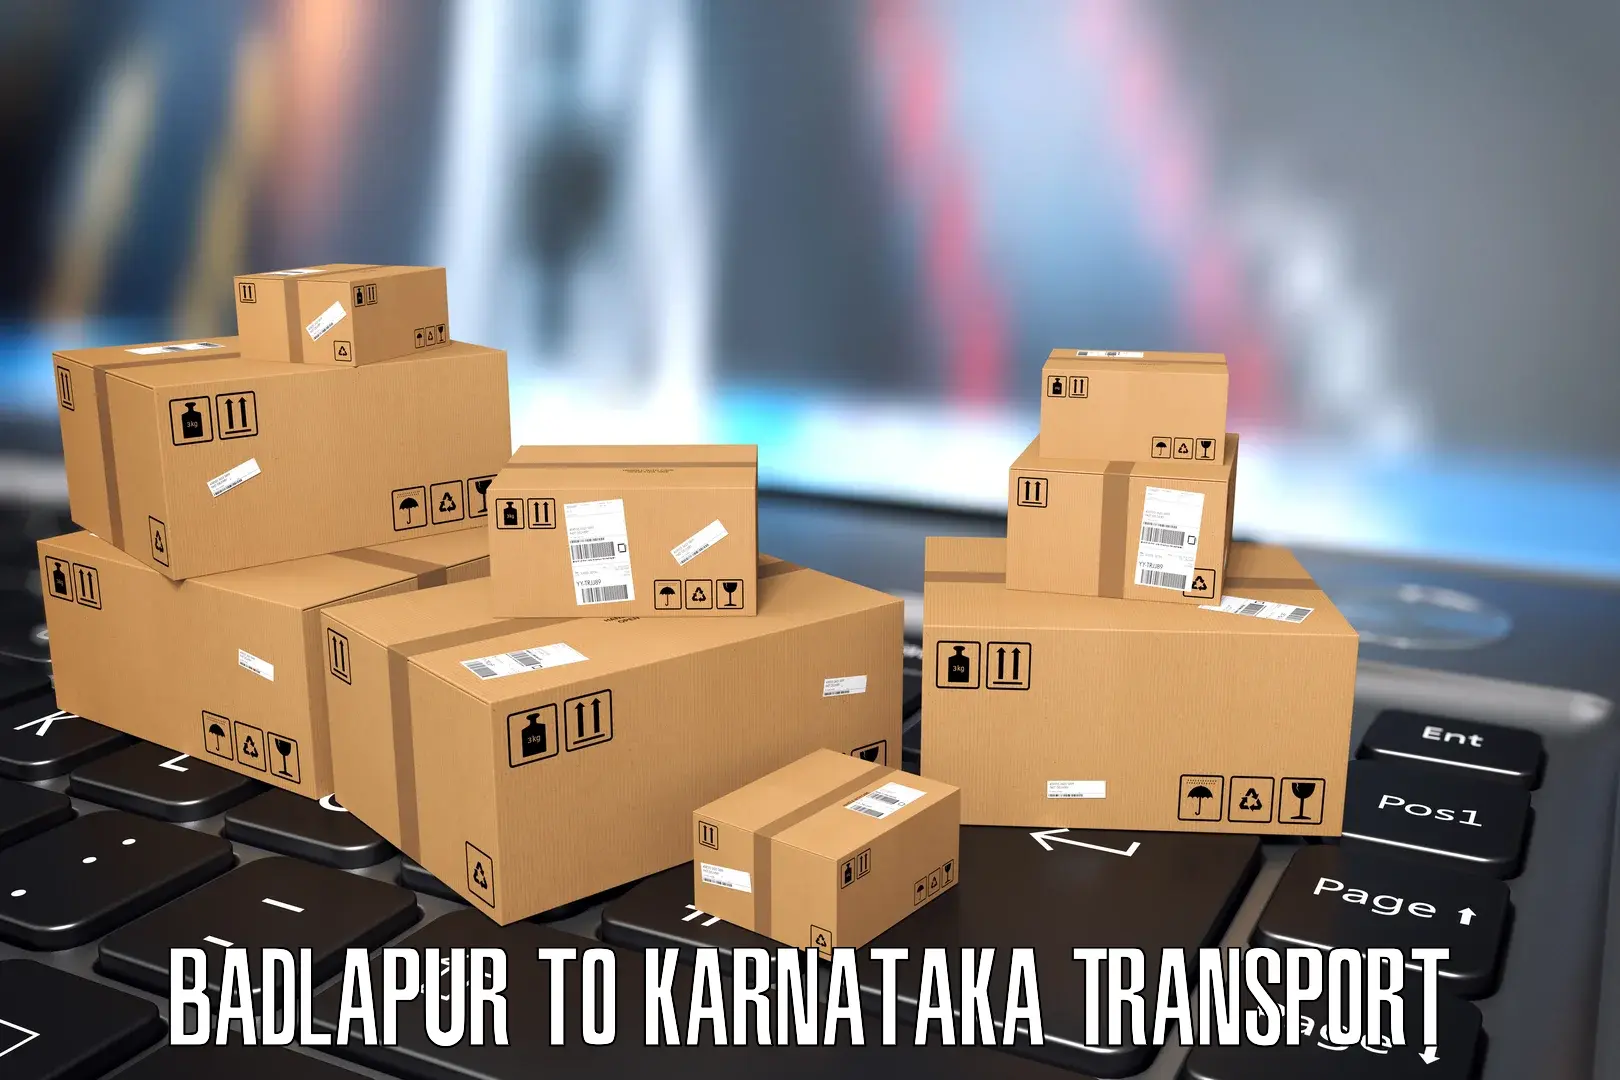 Delivery service Badlapur to Ballari